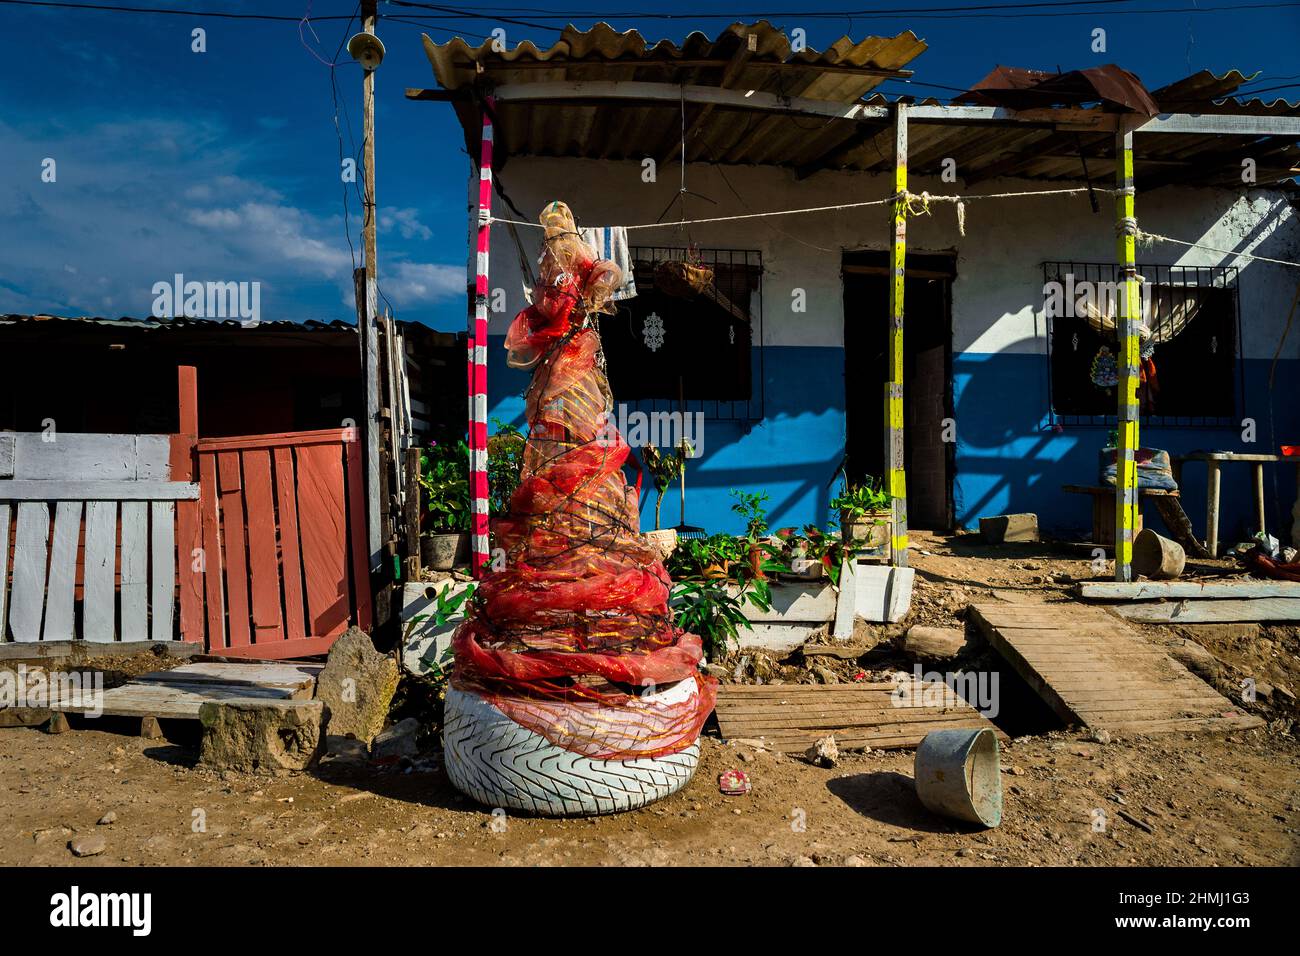 Un árbol de Navidad, hecho de materiales reciclados, se ve colocado frente a una casa familiar en Olaya Herrera, un barrio de baja clase social en Cartagena. Foto de stock